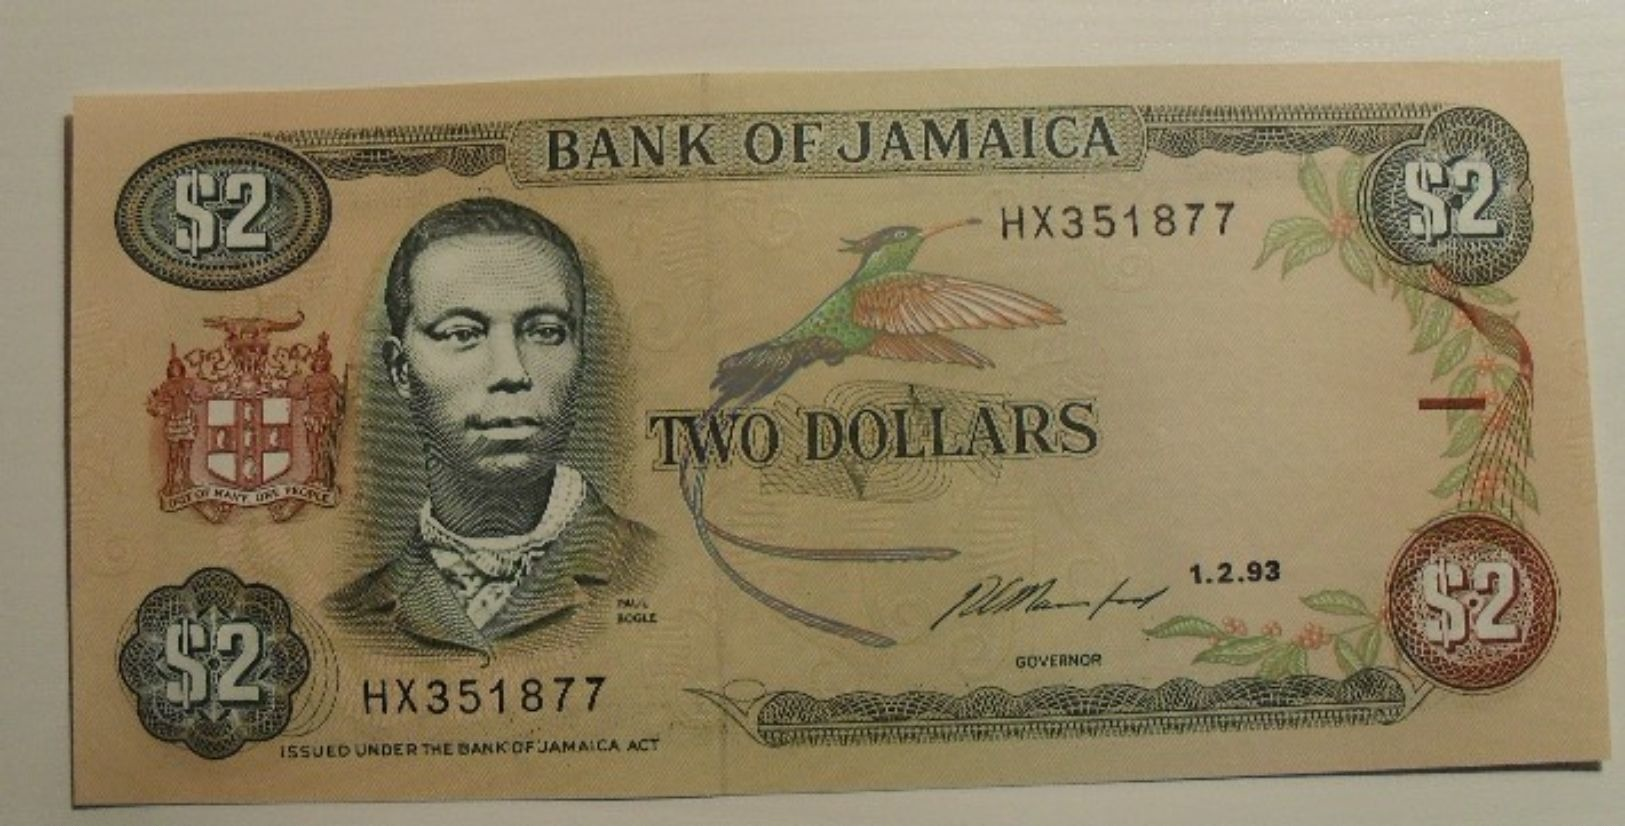 1993 - Jamaique - Jamaica - TWO DOLLARS - 1.2.93 - HX351877 - Jamaique